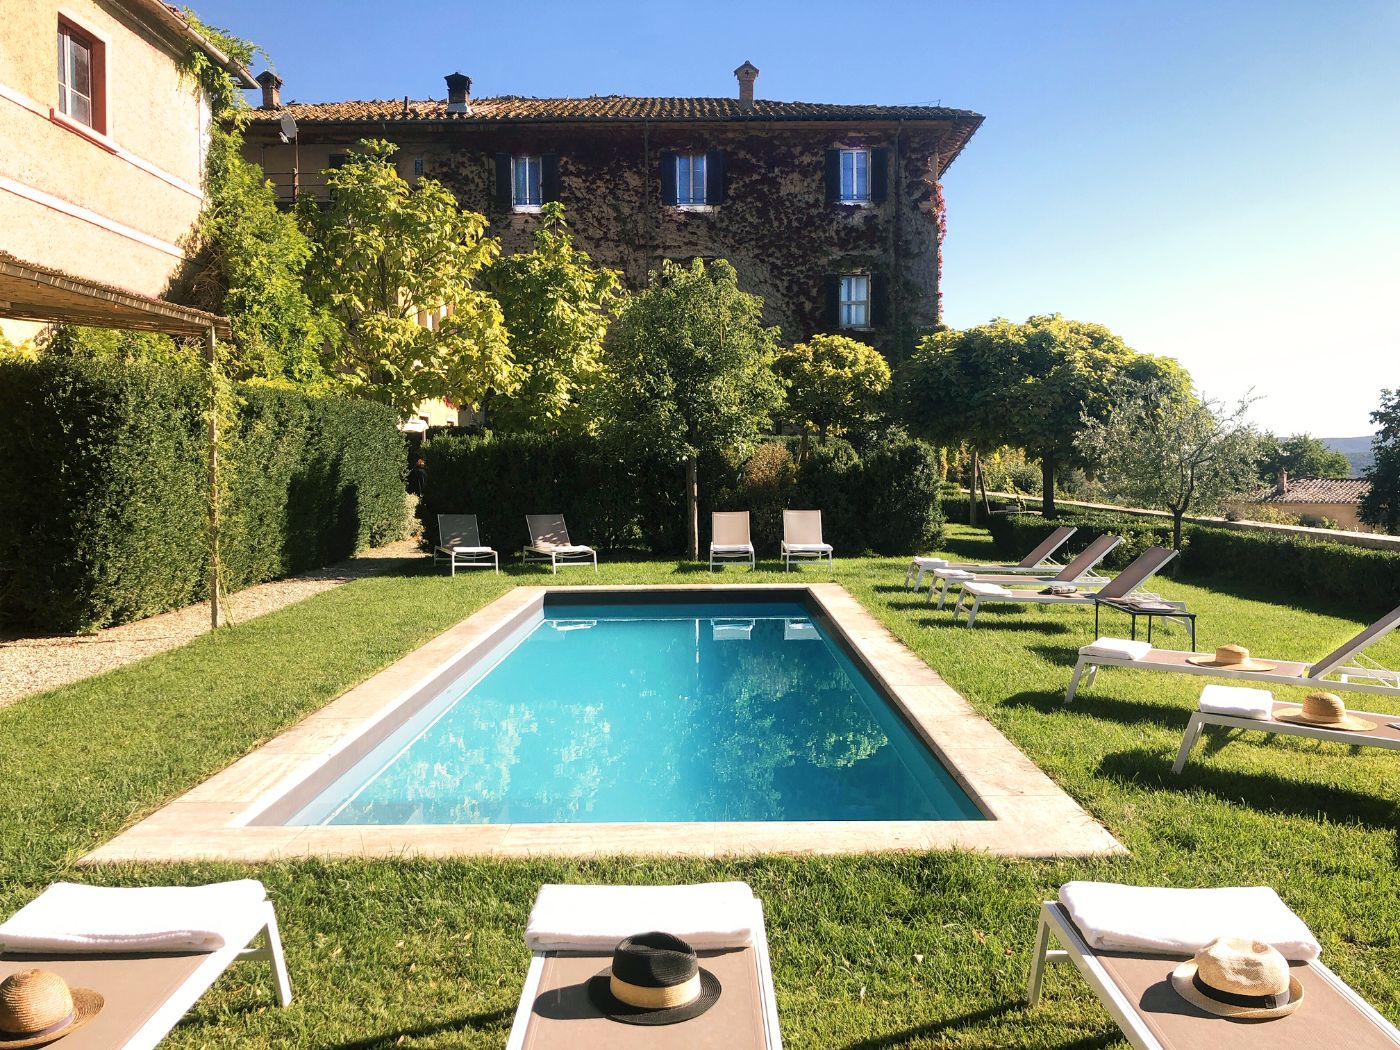 The pool at Villa Delle Vigne.